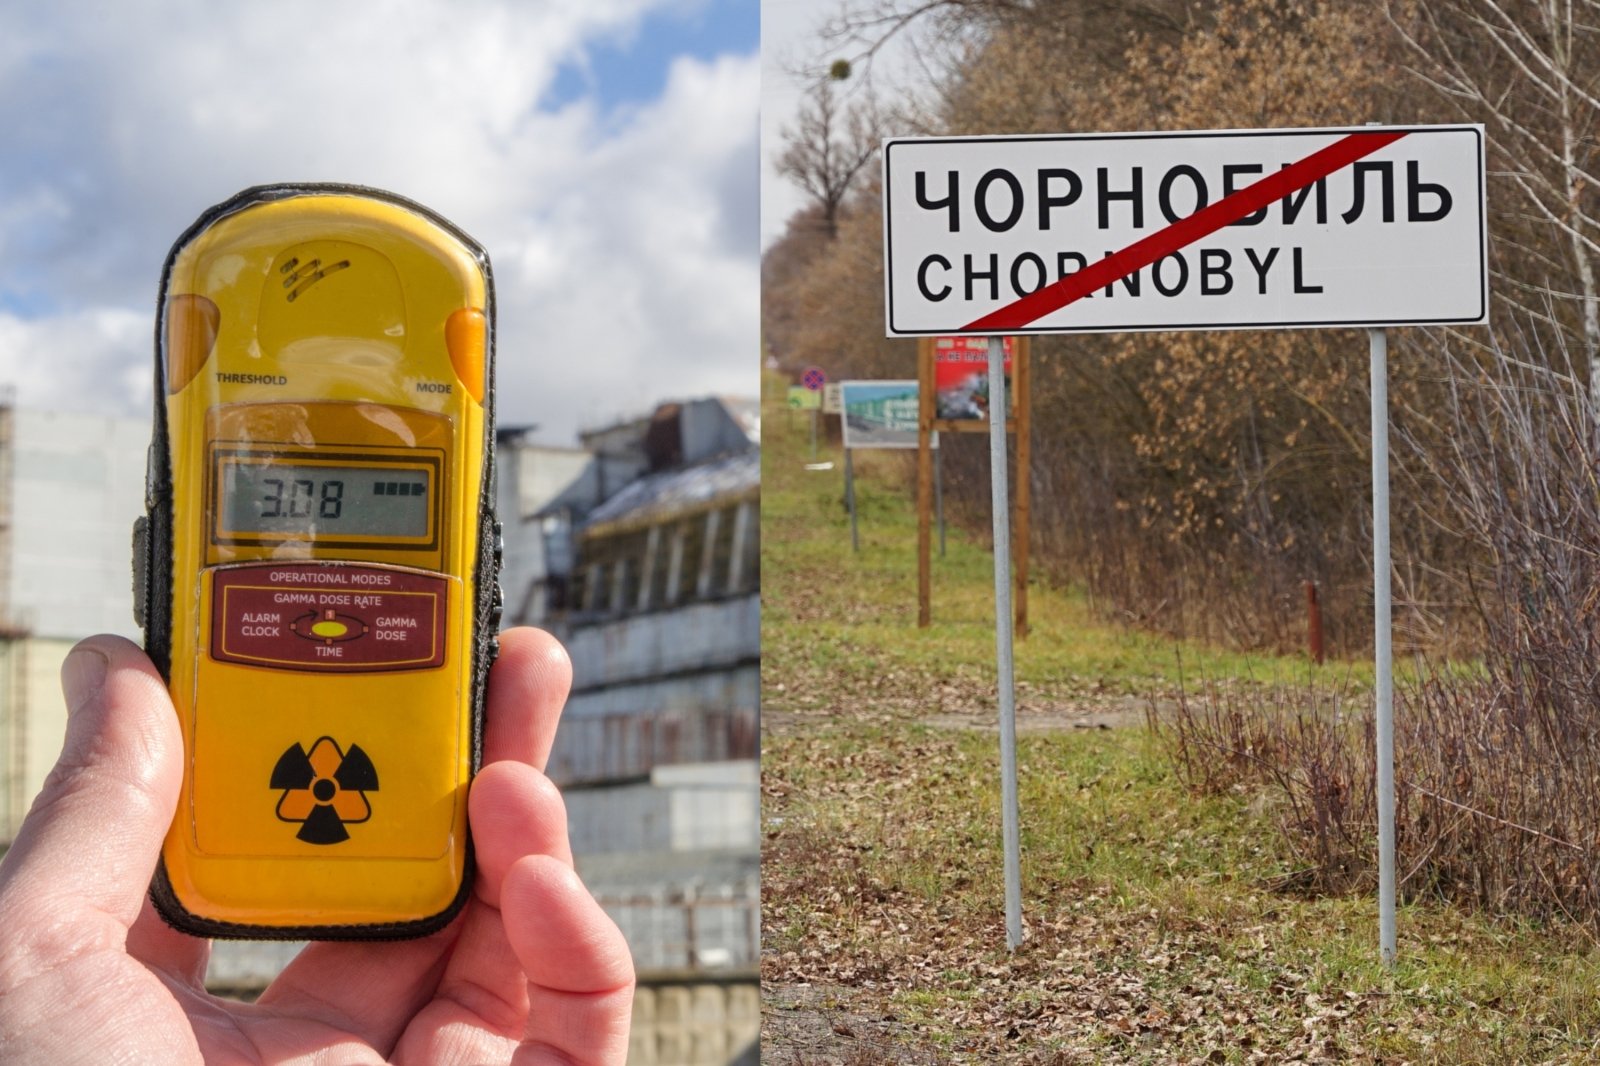 Med økende risiko for stråling nær Tsjernobyl – forklaring av forskere om strålingsovervåking i Litauen